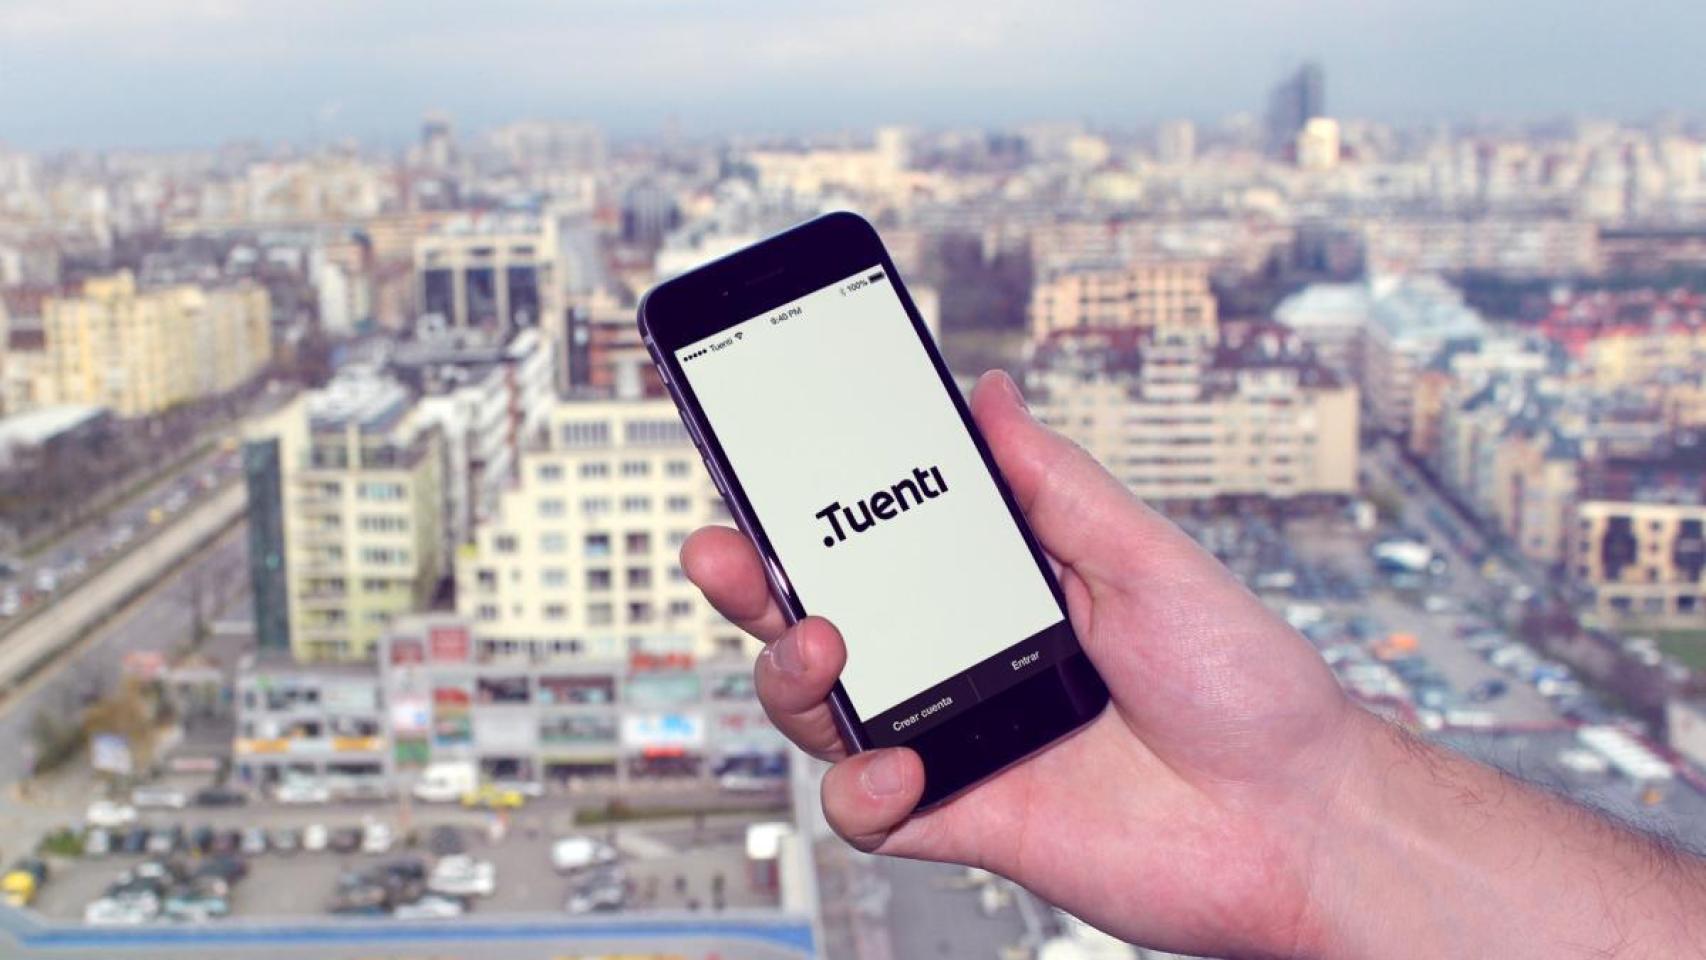 Tuenti fue fundada en 2006 como red social y hoy es una operadora móvil.